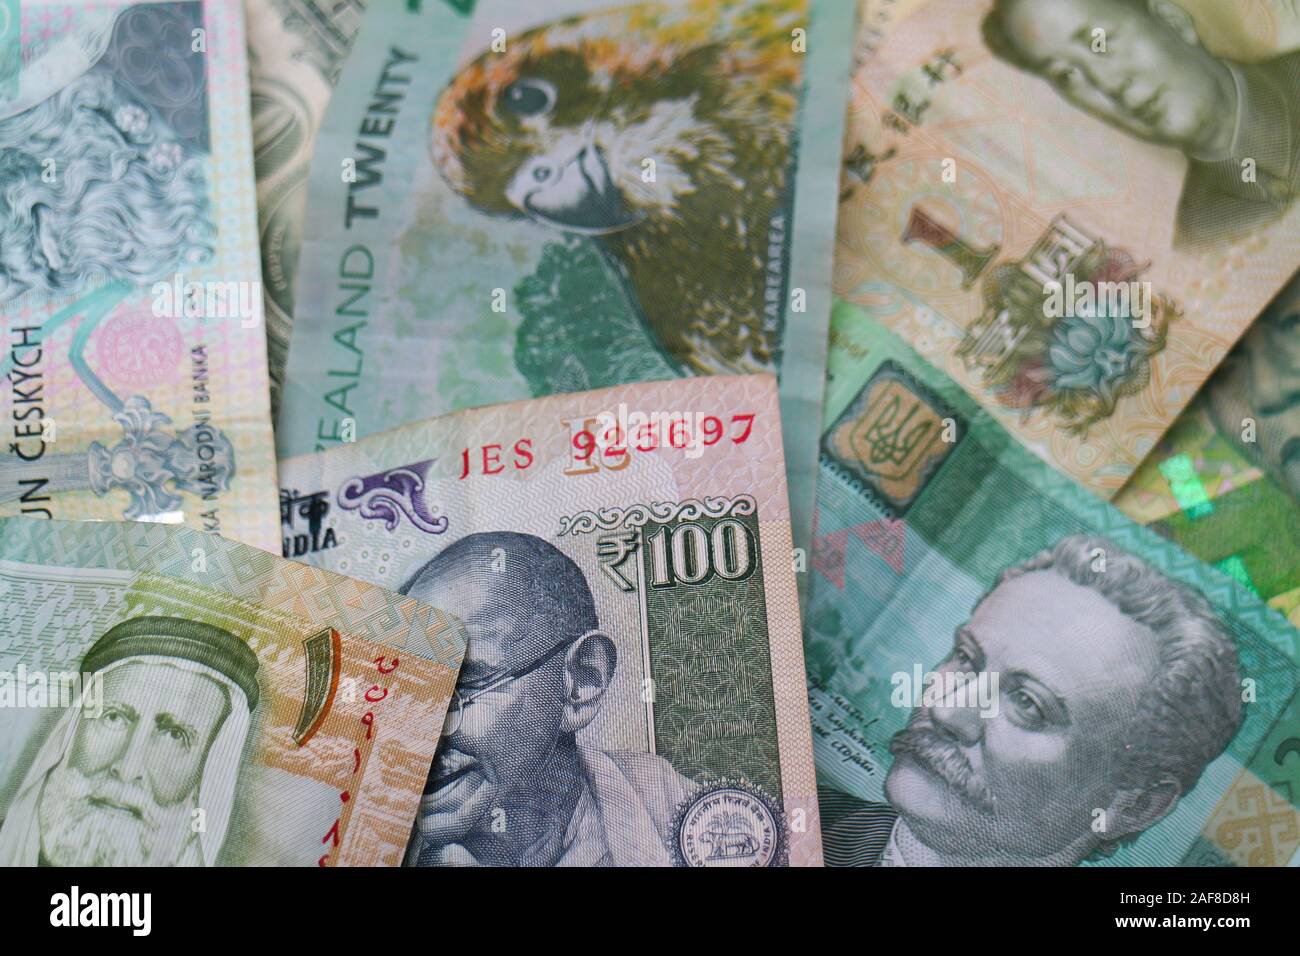 Grünen Banknoten der Welt Währungen: Indische Rupien, Chinesisch Yuan, jordanische Dinar, US-Dollar, Südafrikanische Rand, Tschechische Krone, ukrainische Griwna. Stockfoto